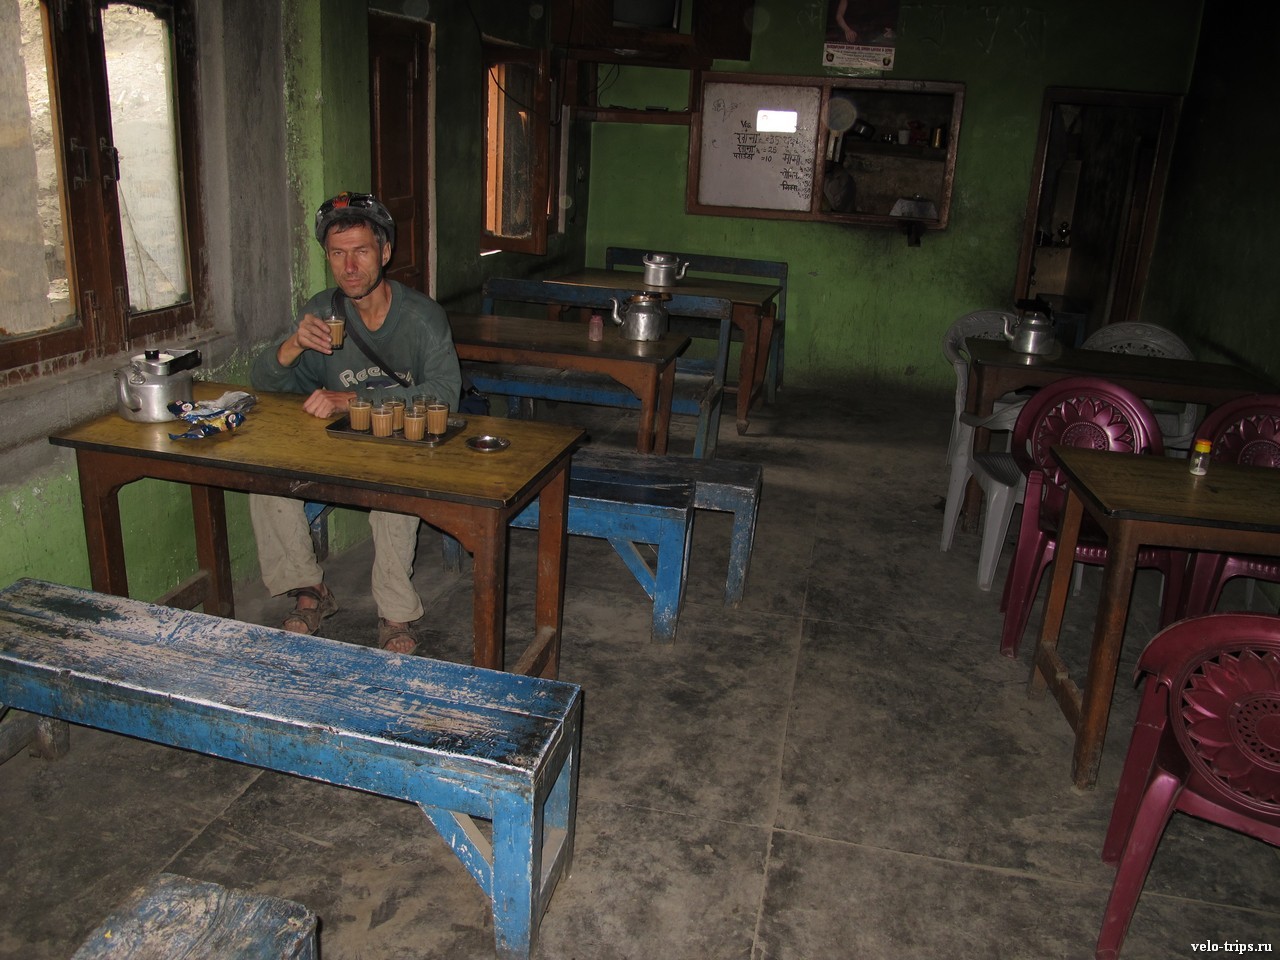 Drinking tea in Himalaya dhaba